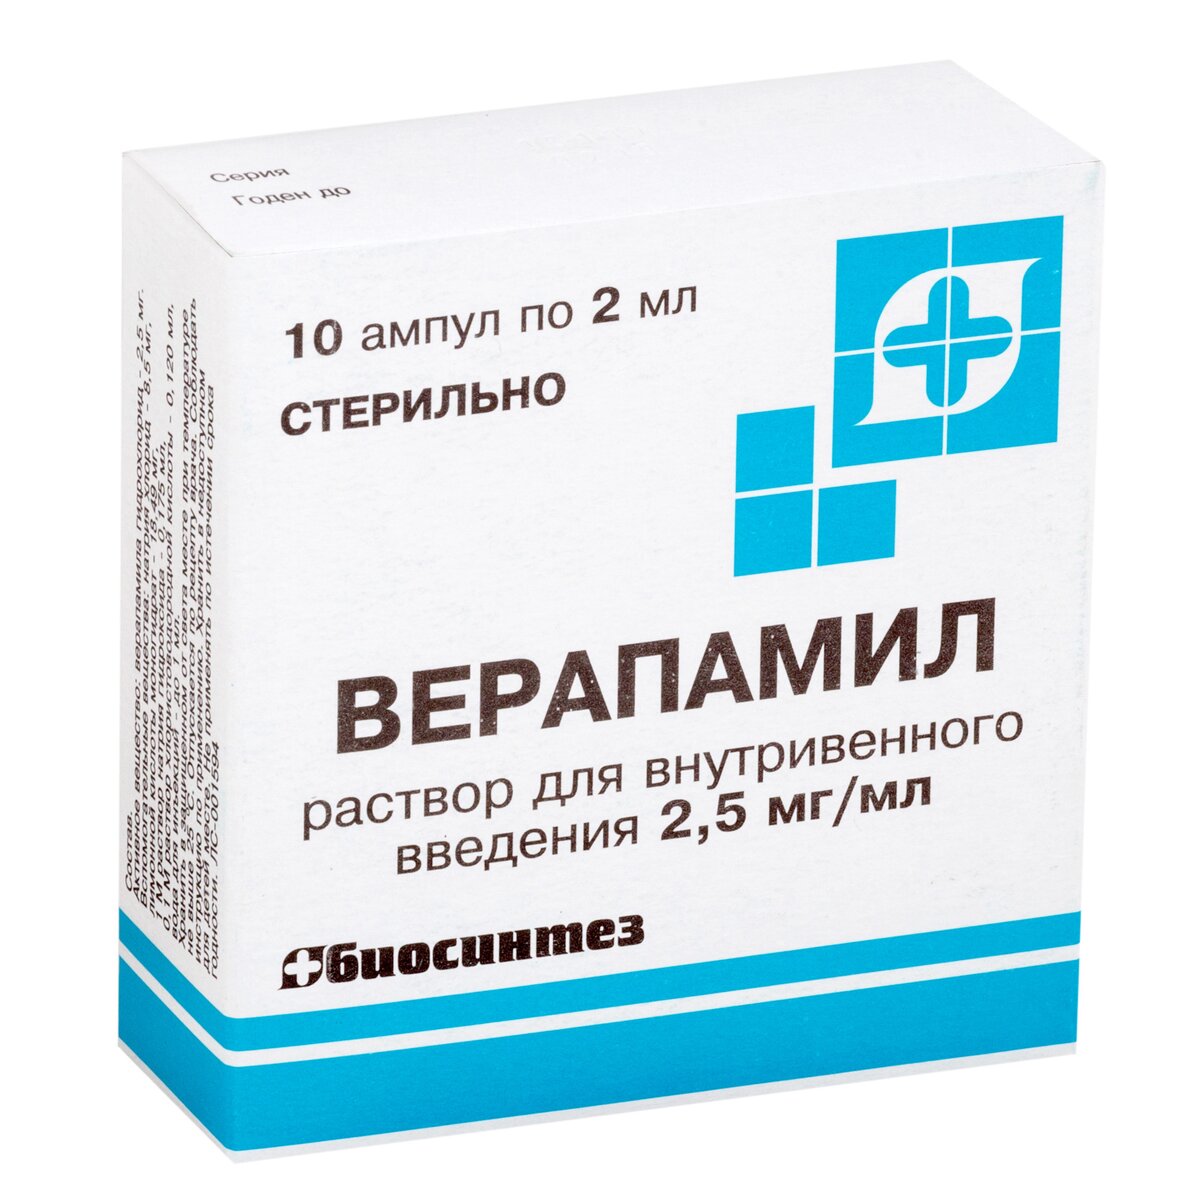 Верапамил раствор для внутривенного введения 2,5 мг/мл 2 мл ампулы 10 шт.